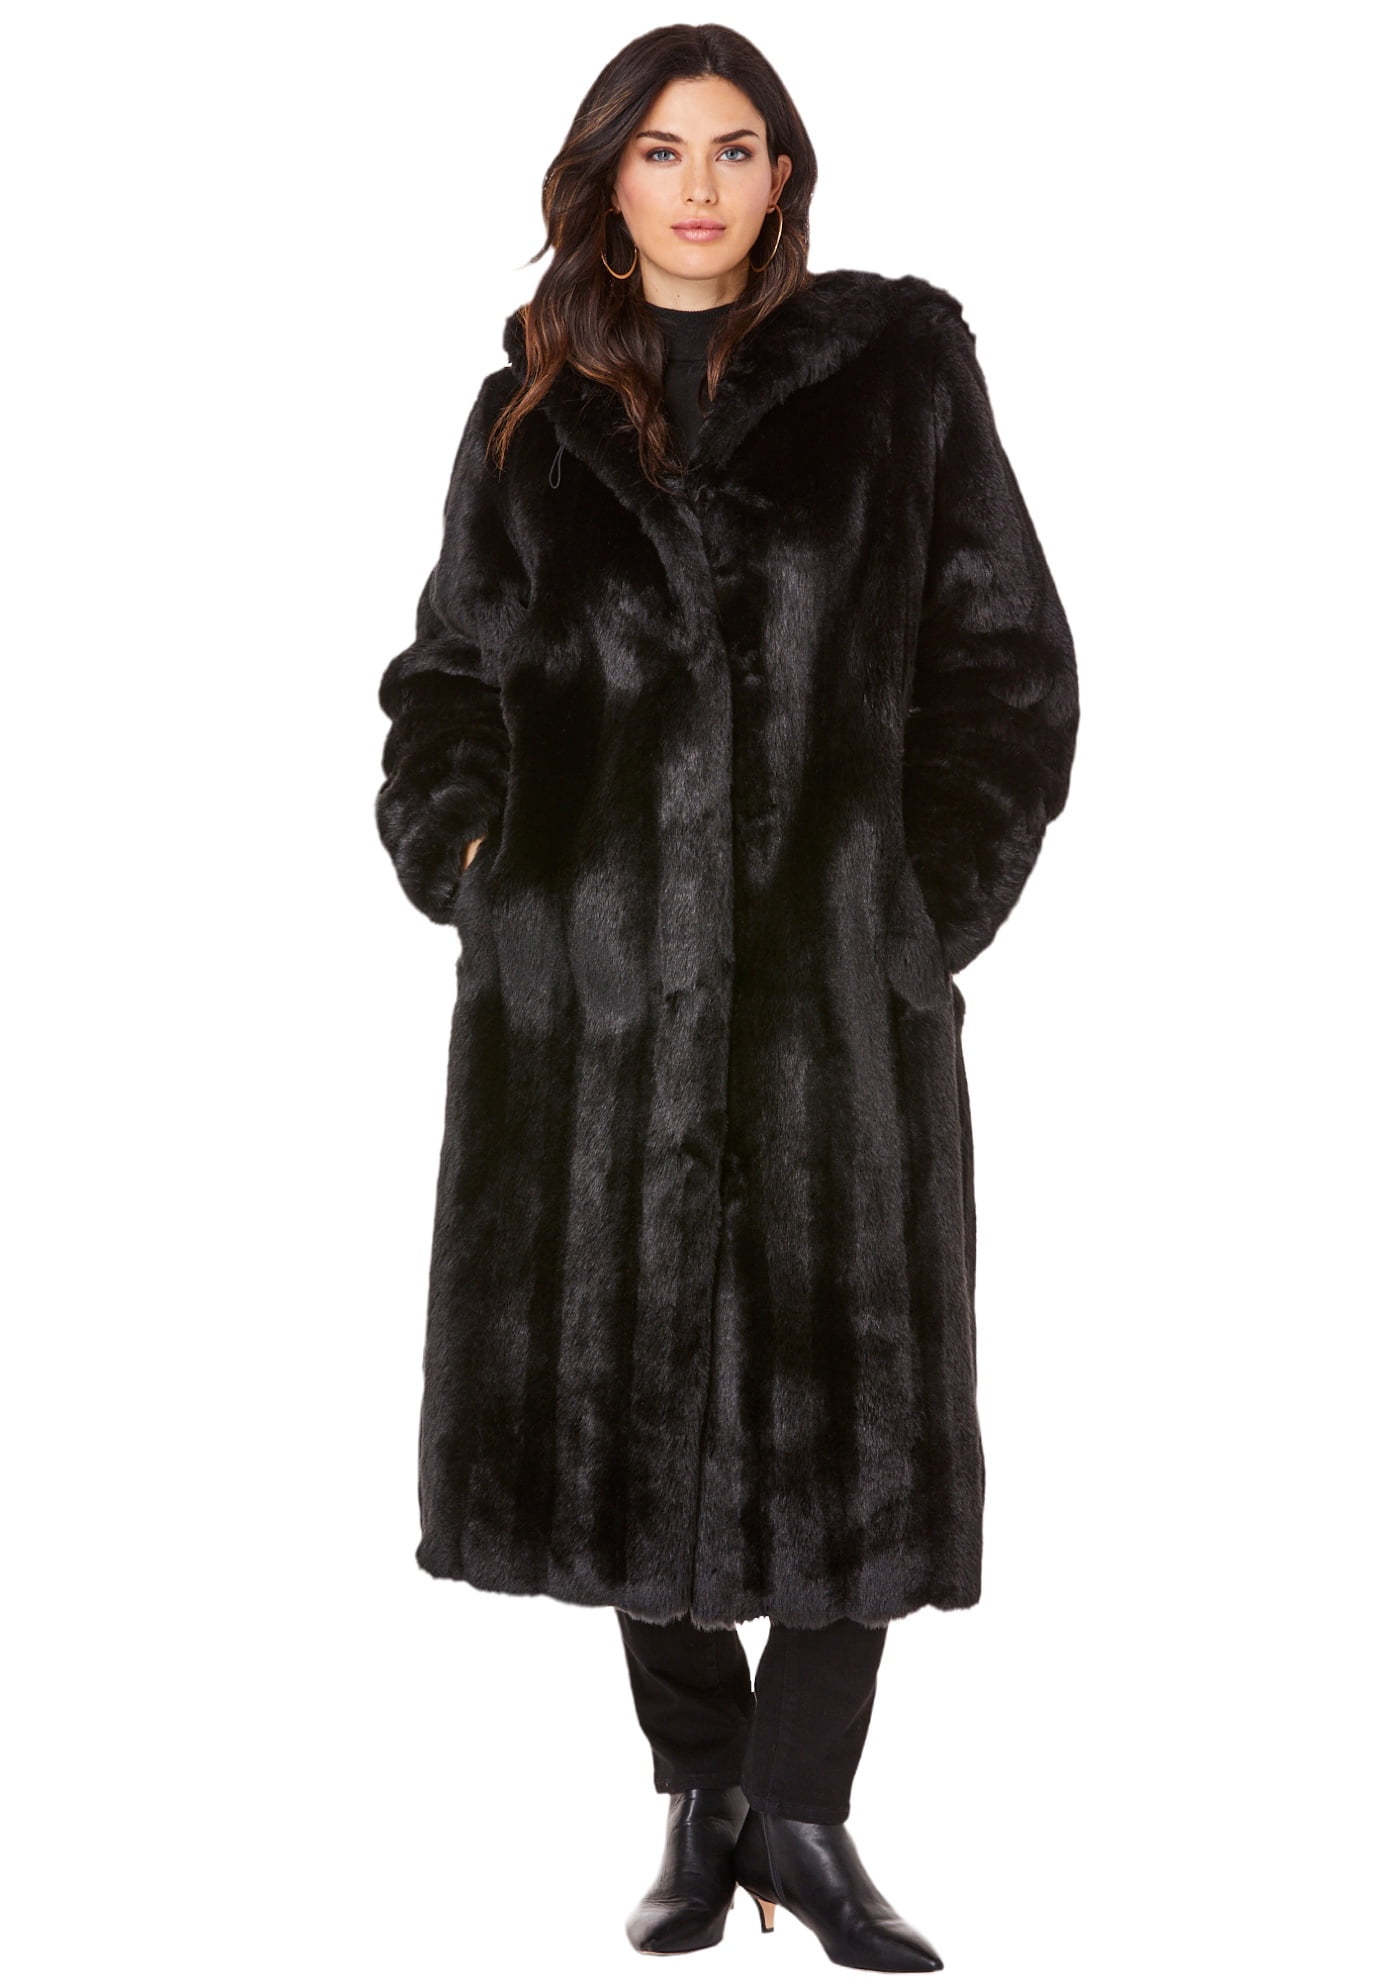 lidelse frugtbart pige Long Black Fur Coat With Hood Switzerland, SAVE 43% - eagleflair.com